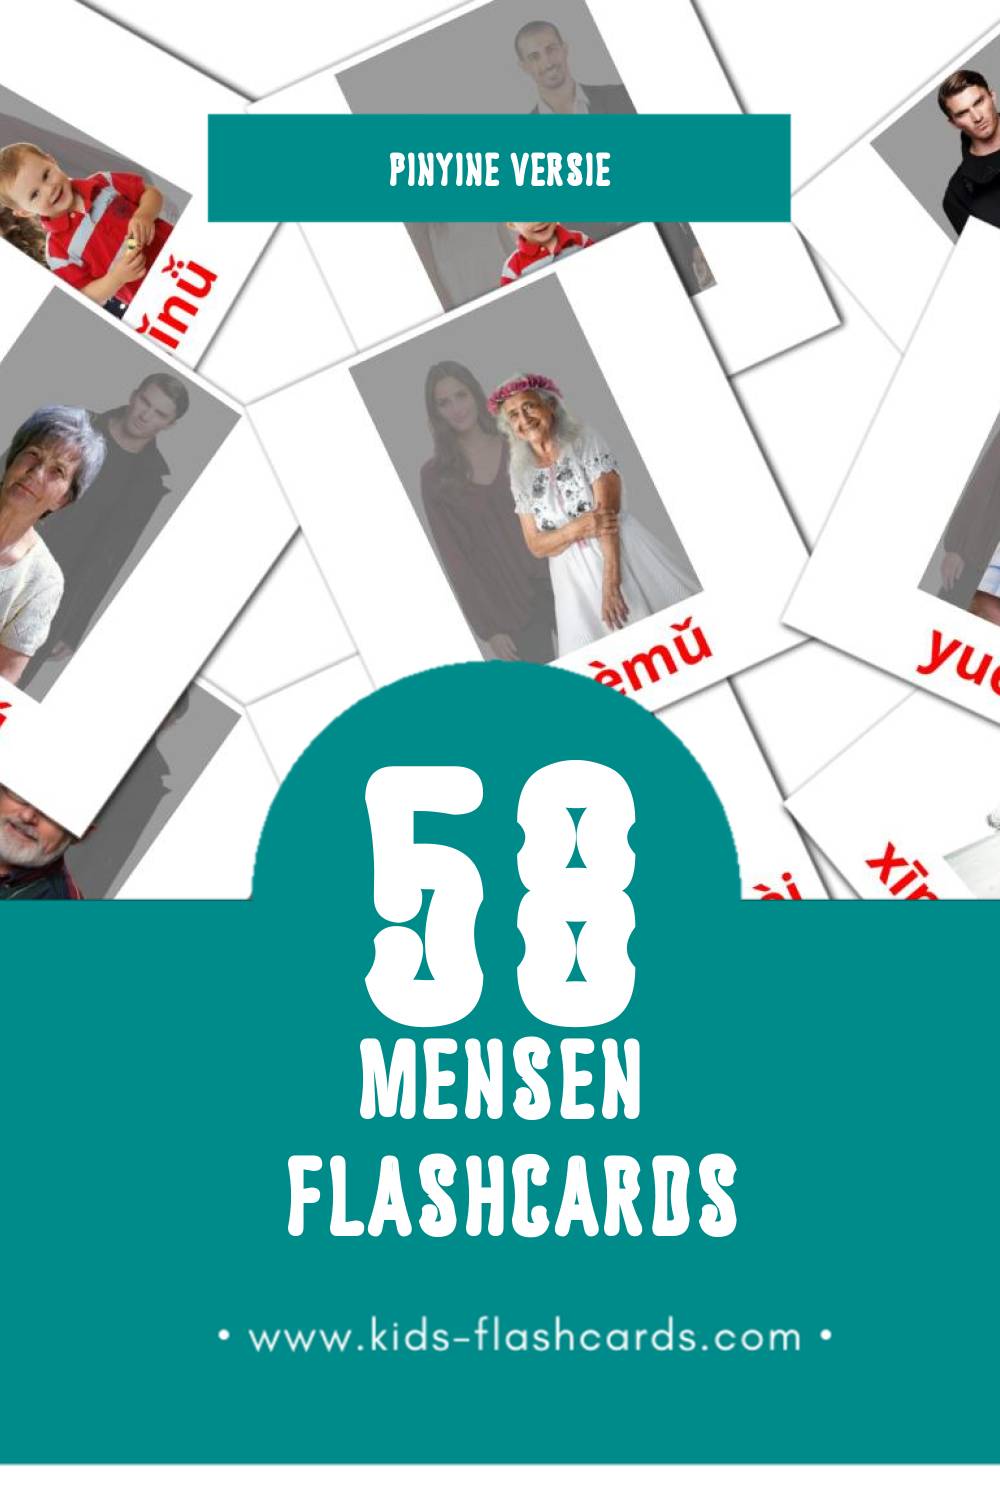 Visuele Rénmen Flashcards voor Kleuters (32 kaarten in het Pinyin)